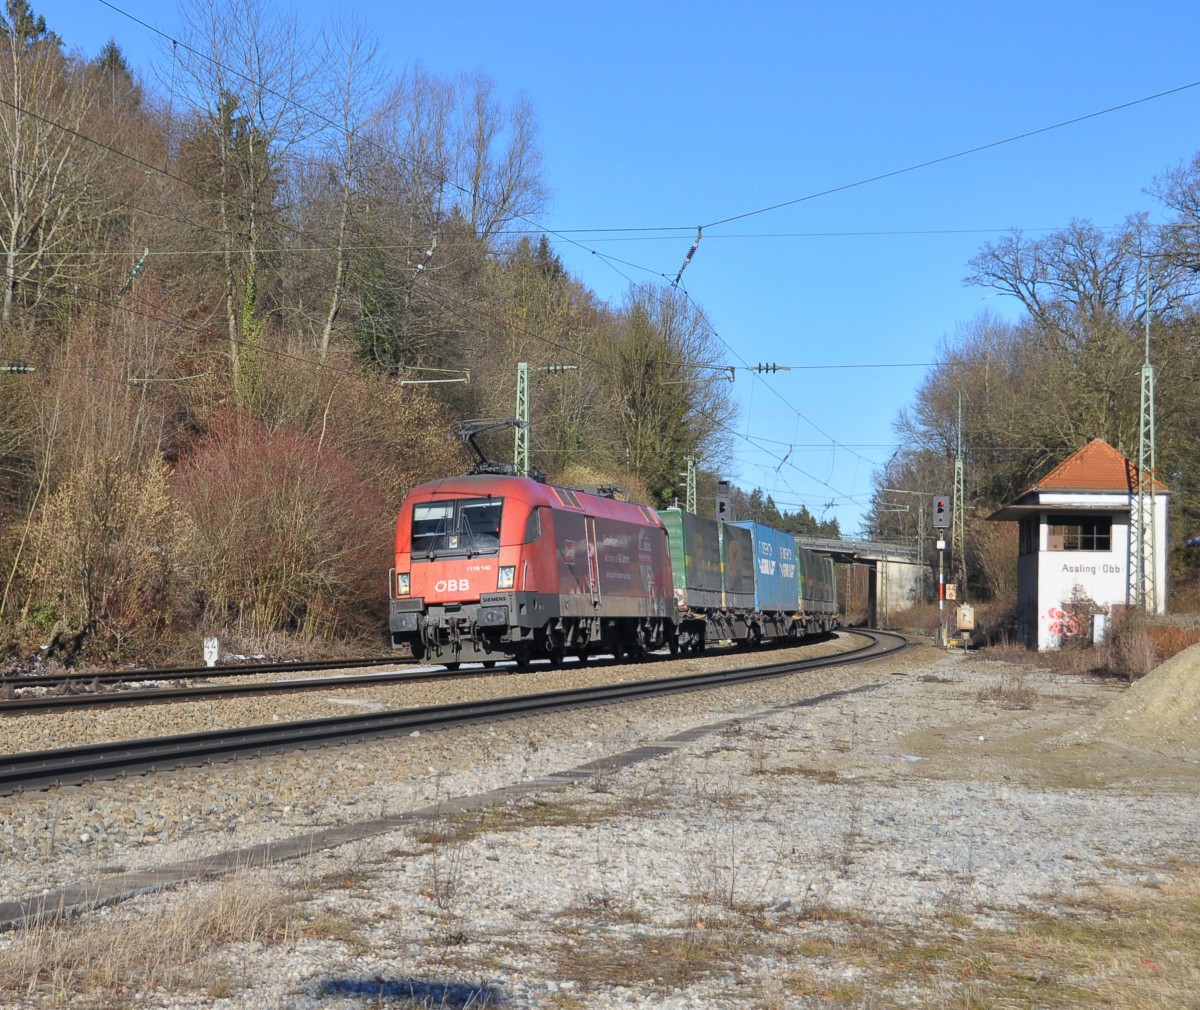 1116 143 die Montan Lok ist mit einem KLV in Richtung Österreich unterwegs und kommt in Aßling Obb.dem Fotografen vor die Linse am 6.2.2014